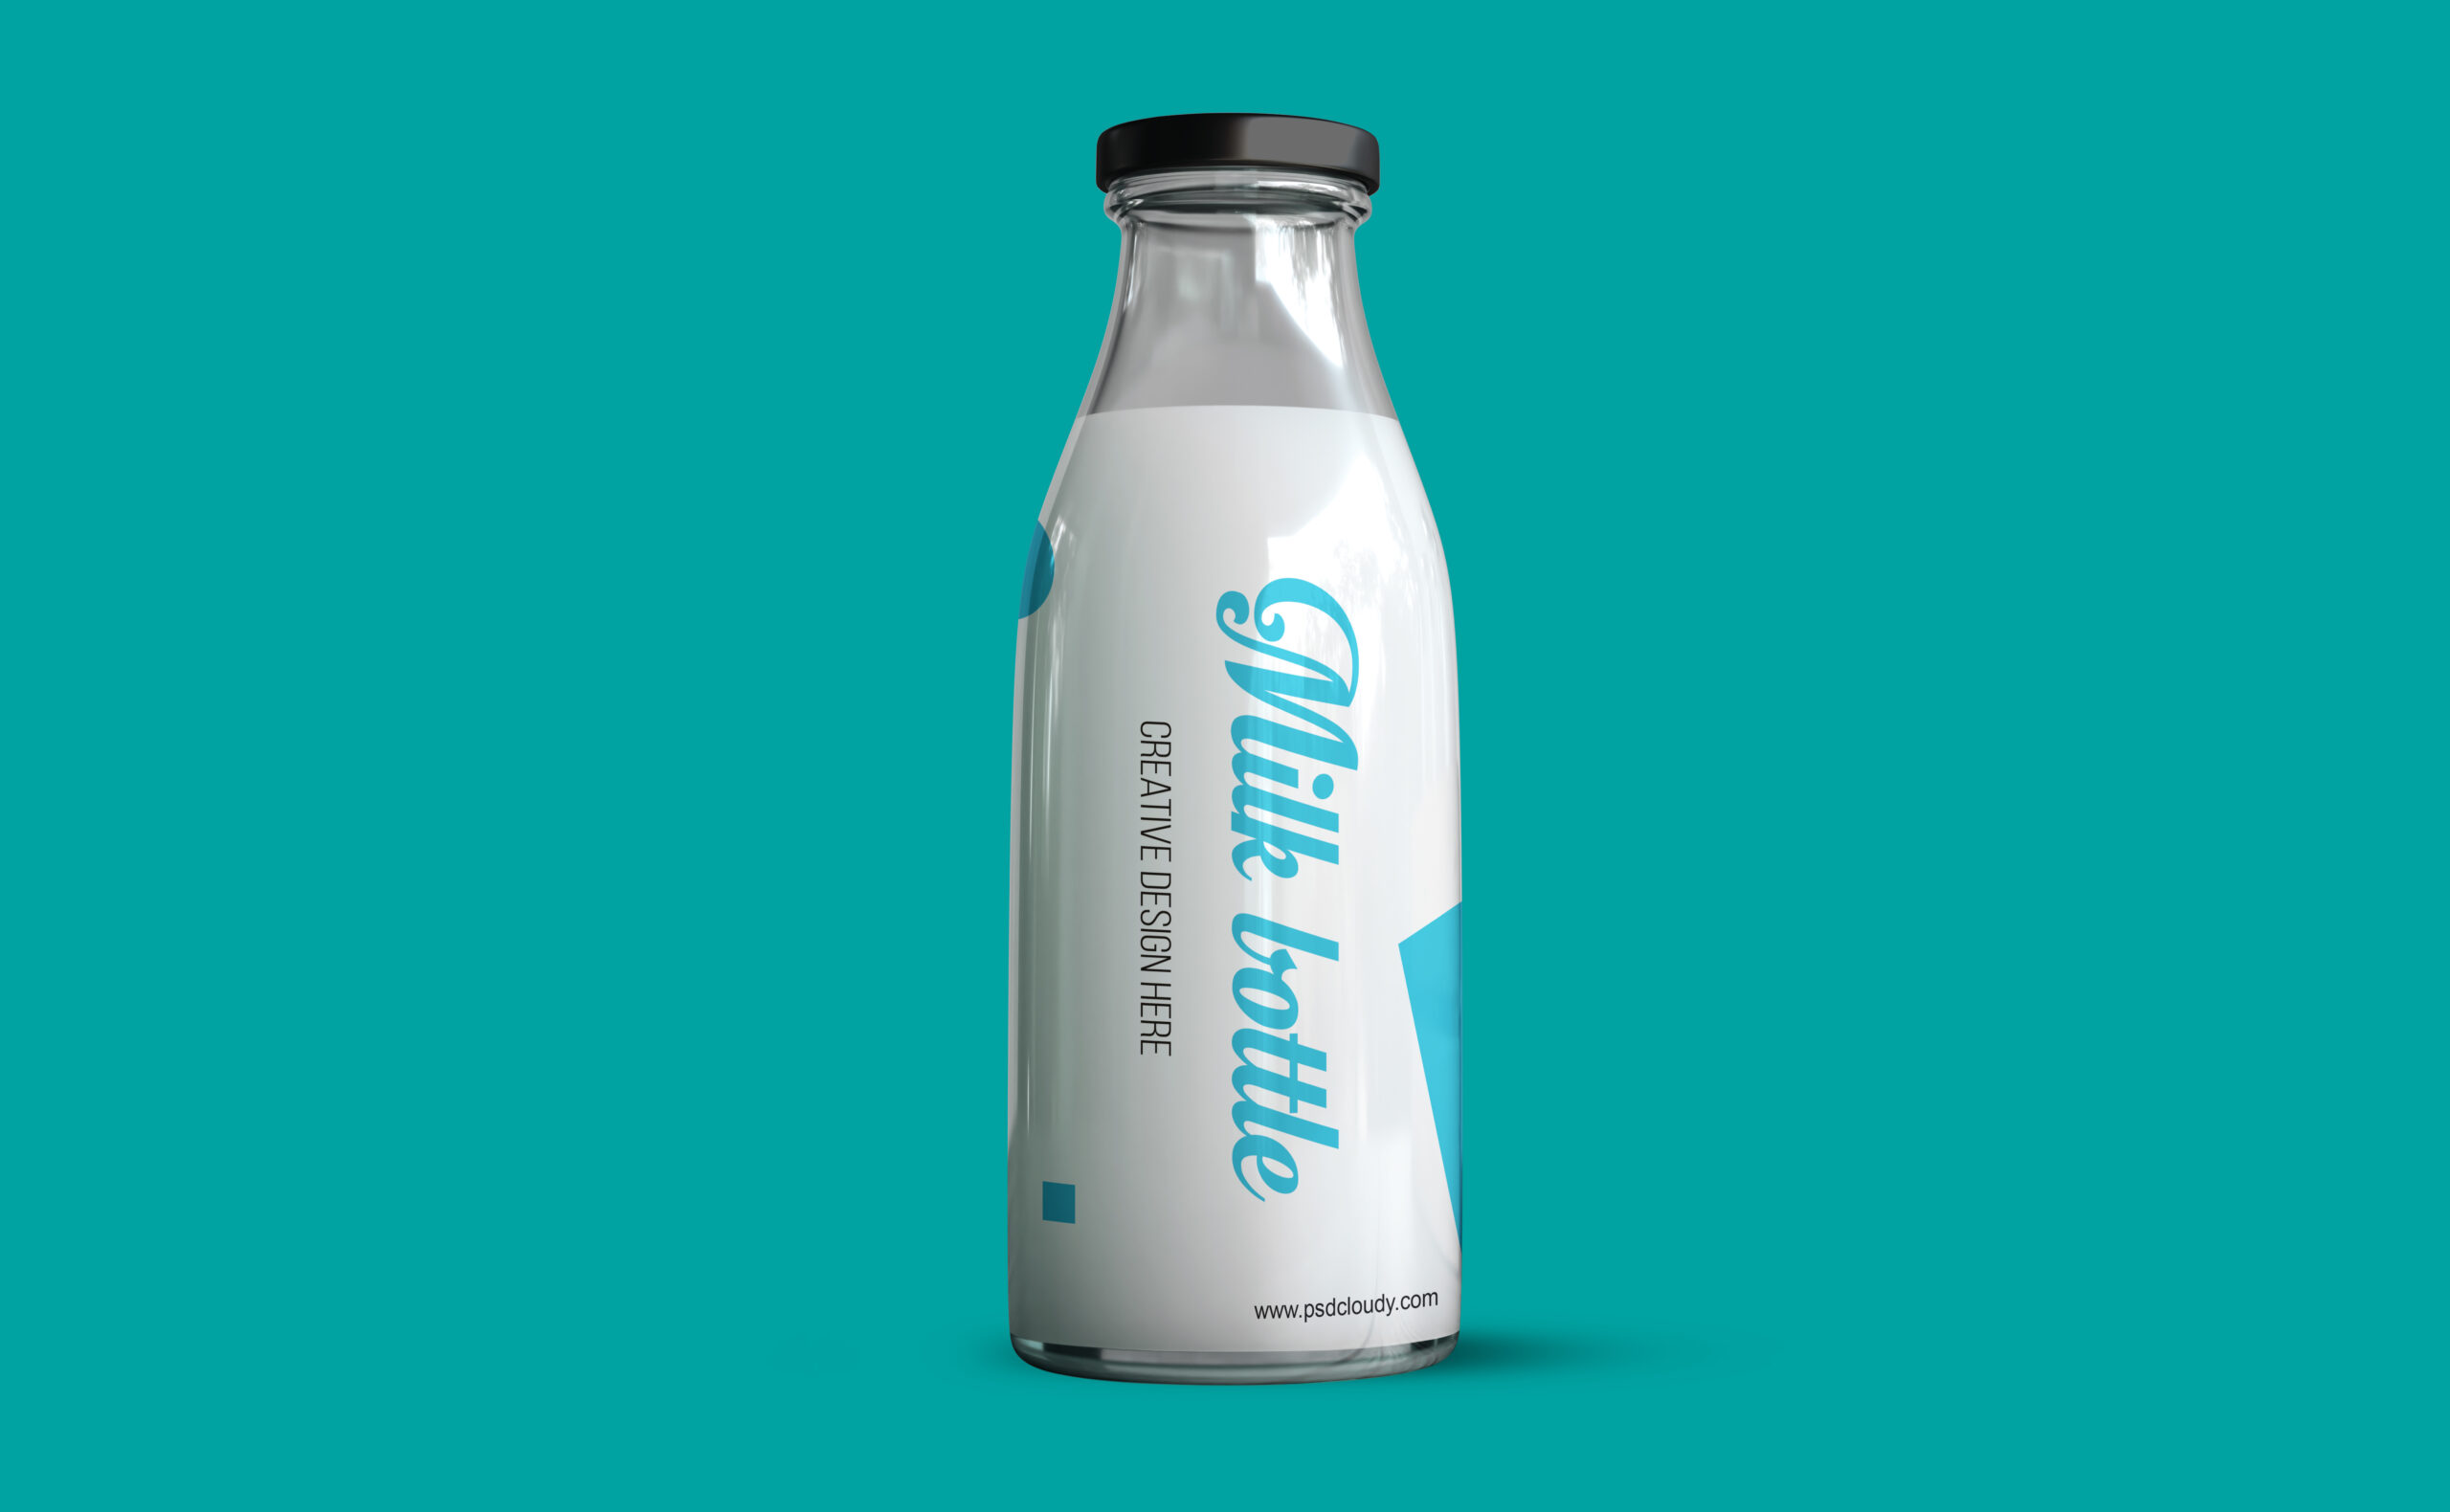 milk Bottle Mockup Design PSD Free Download 1